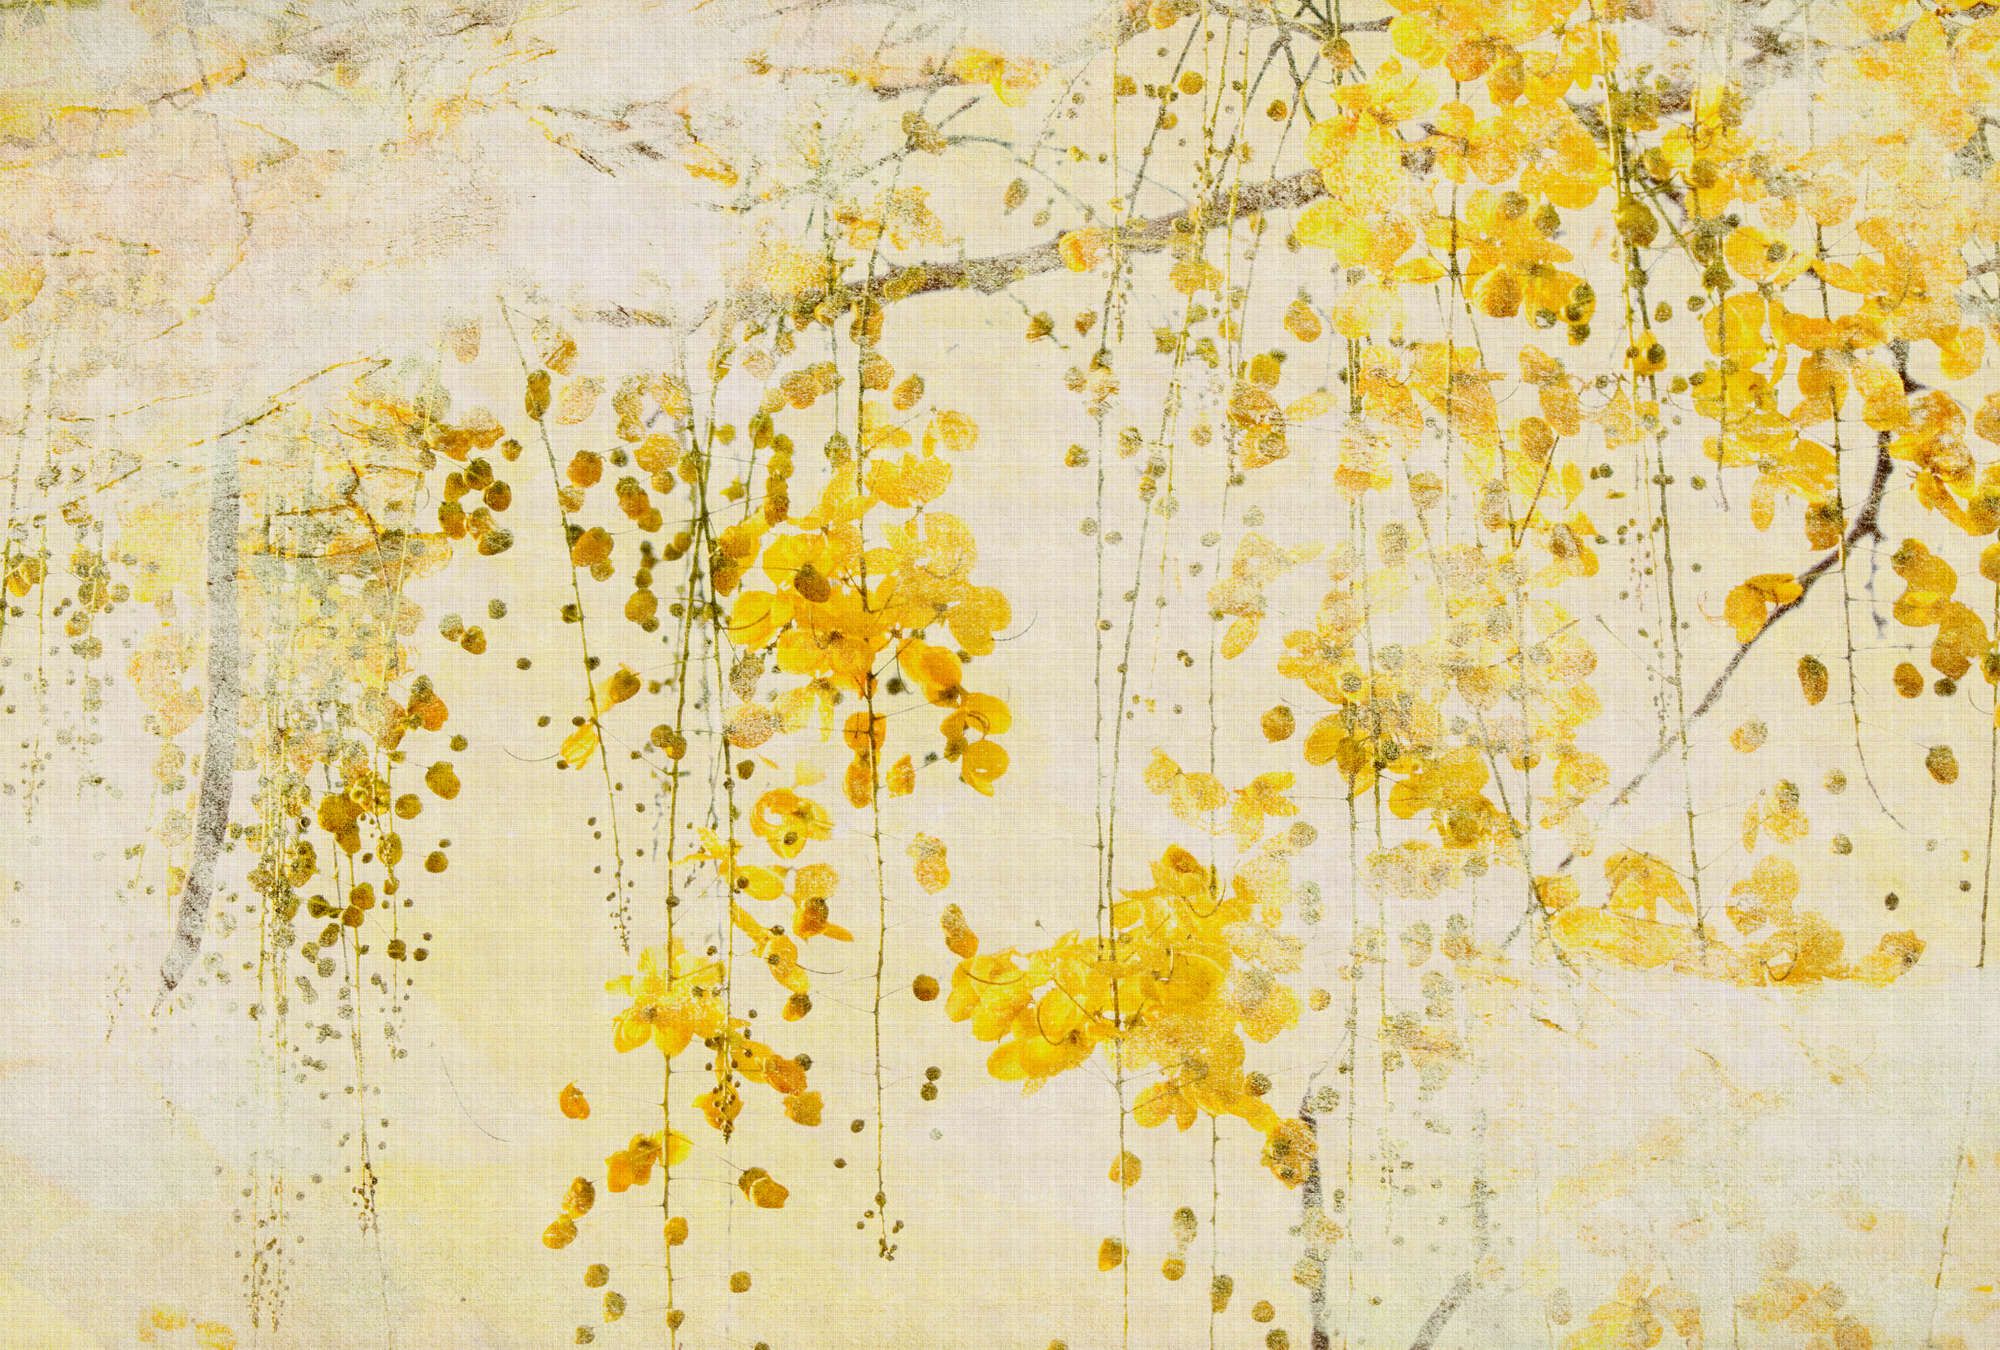             papier peint en papier panoramique »taiyo« - guirlande de fleurs avec structure en lin en arrière-plan - jaune | Intissé lisse, légèrement nacré
        